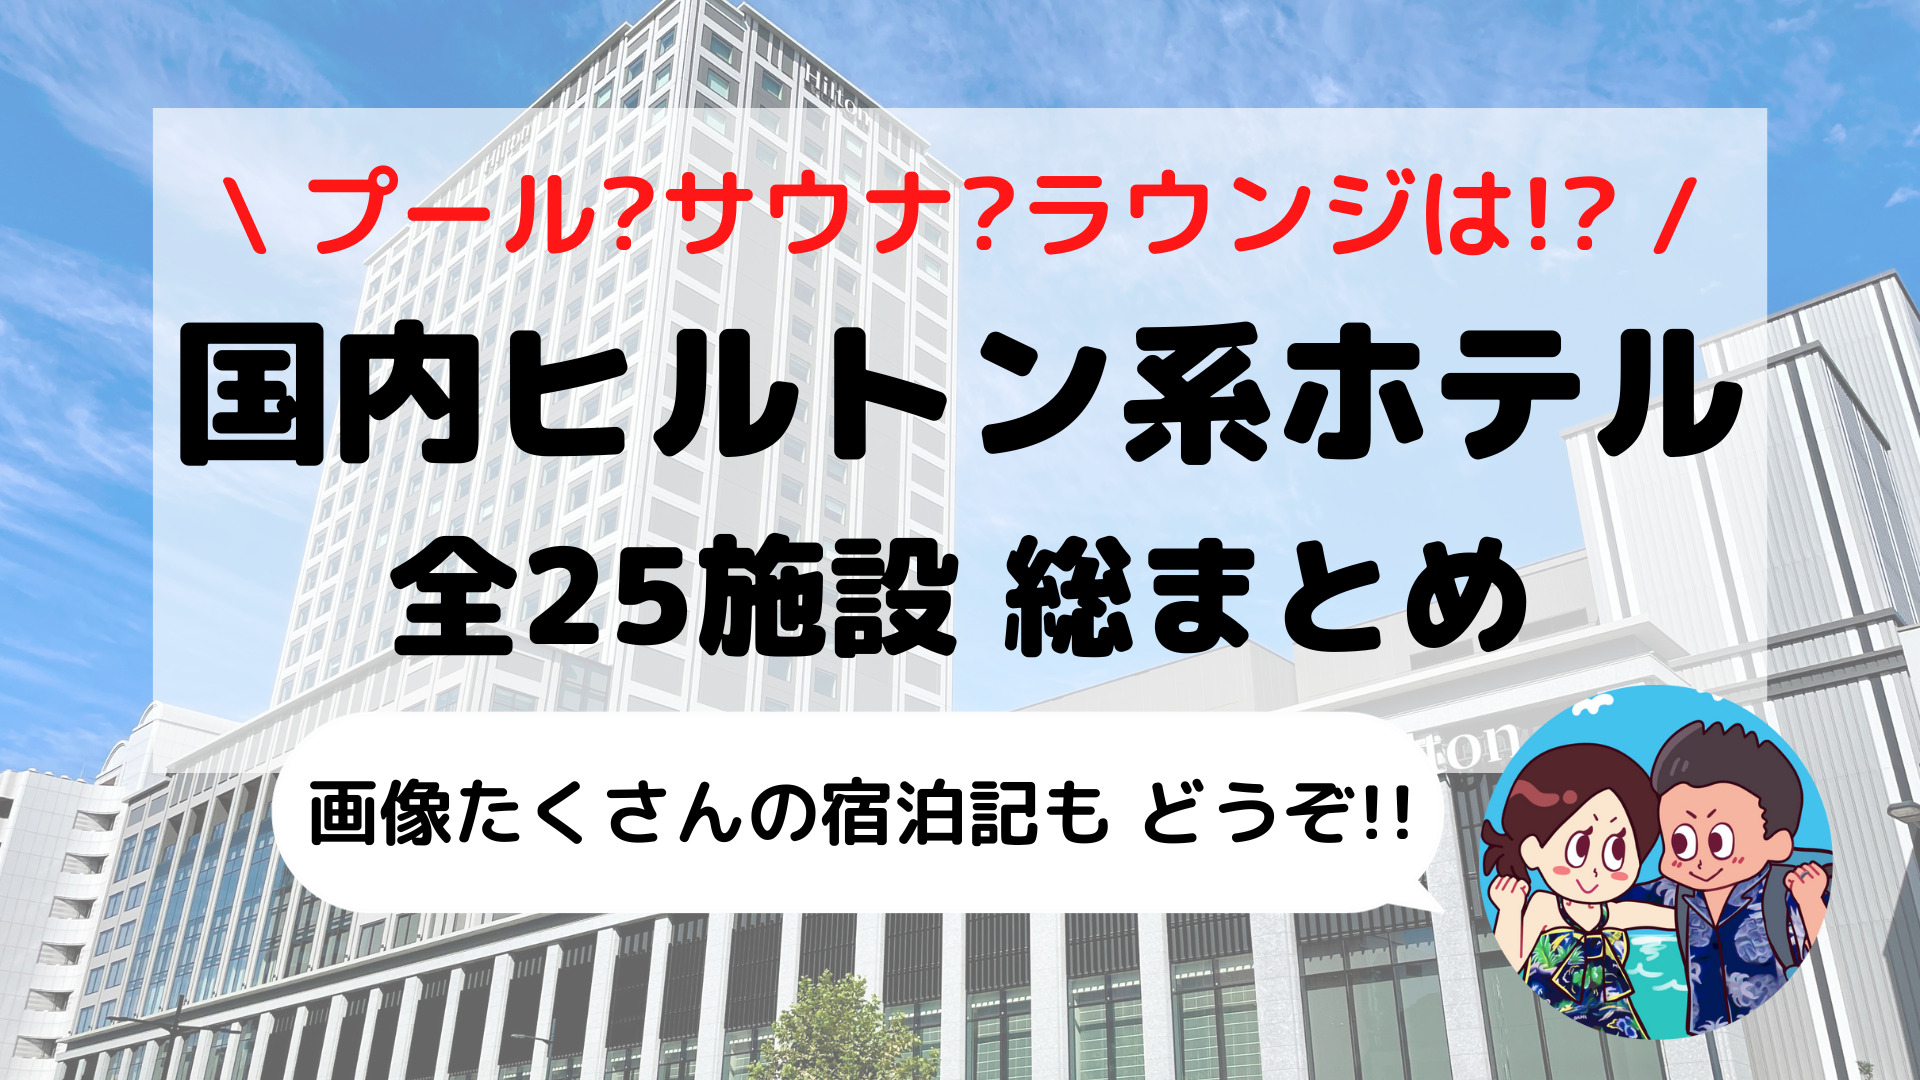 【完全網羅】日本国内「ヒルトン系列ホテル」25施設 完全攻略ガイド(ホテル比較表+オリジナルマップ付き)